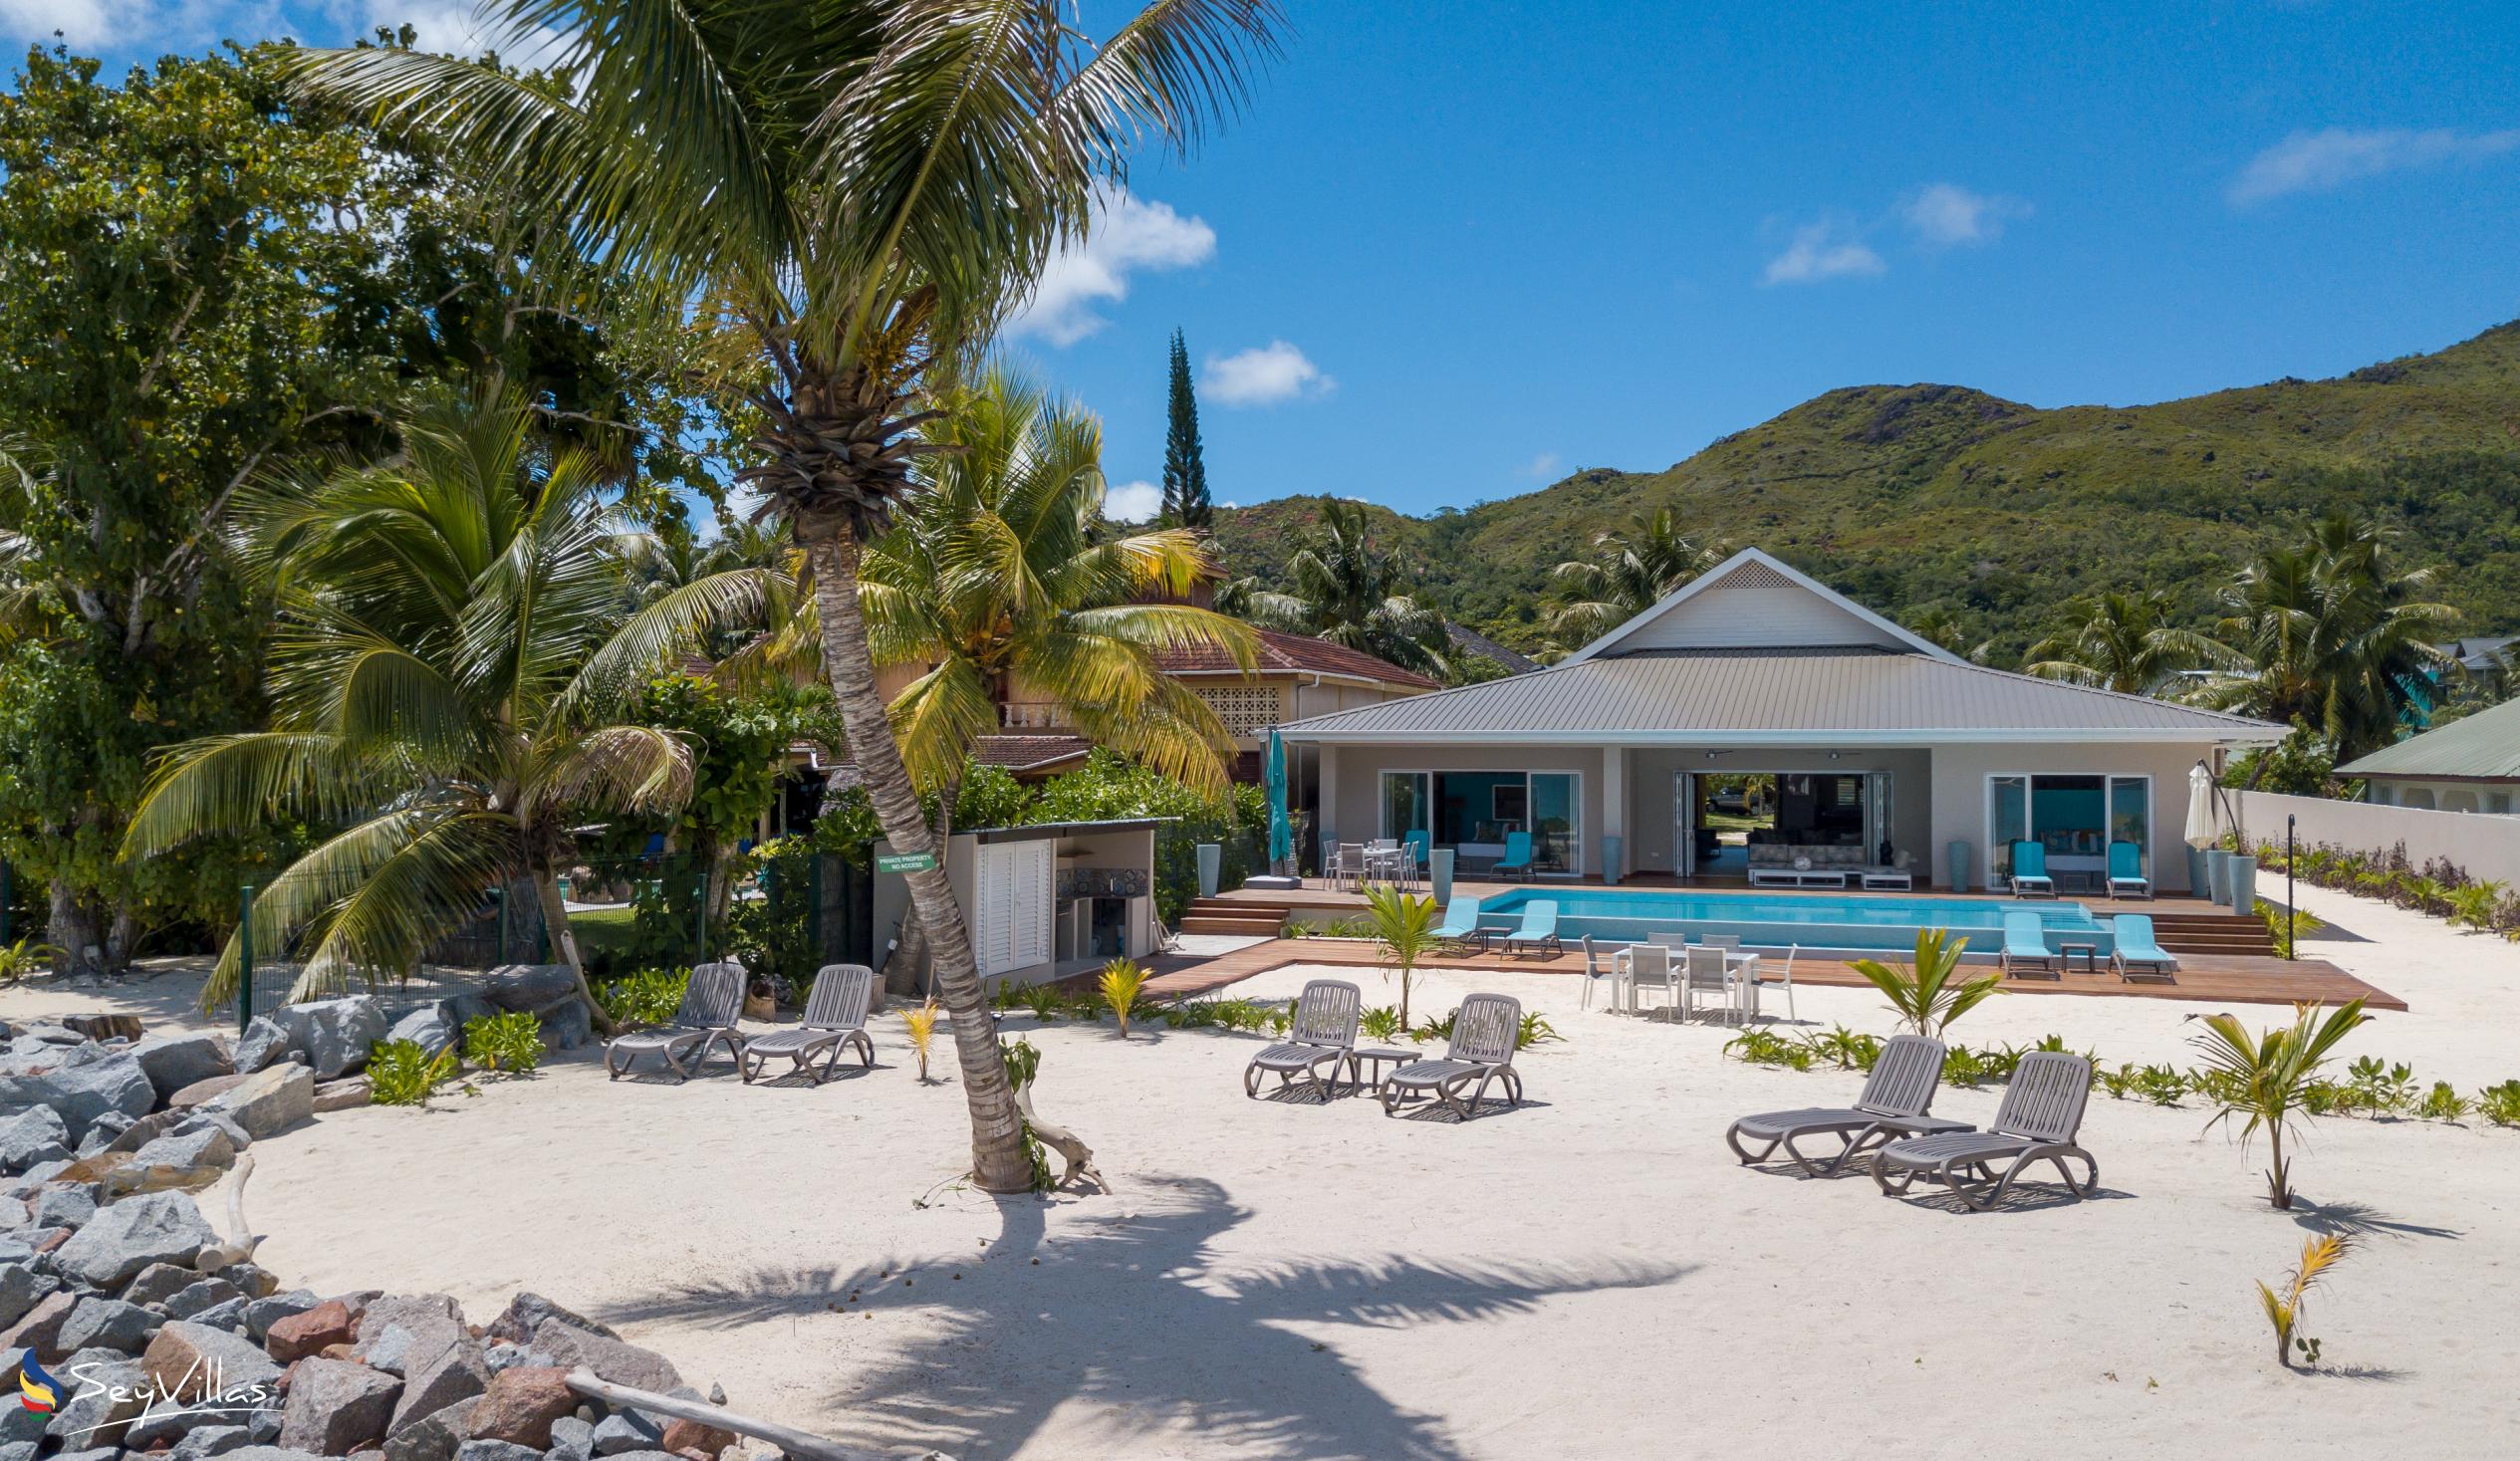 Foto 10: Villas Coco Beach - Extérieur - Praslin (Seychelles)